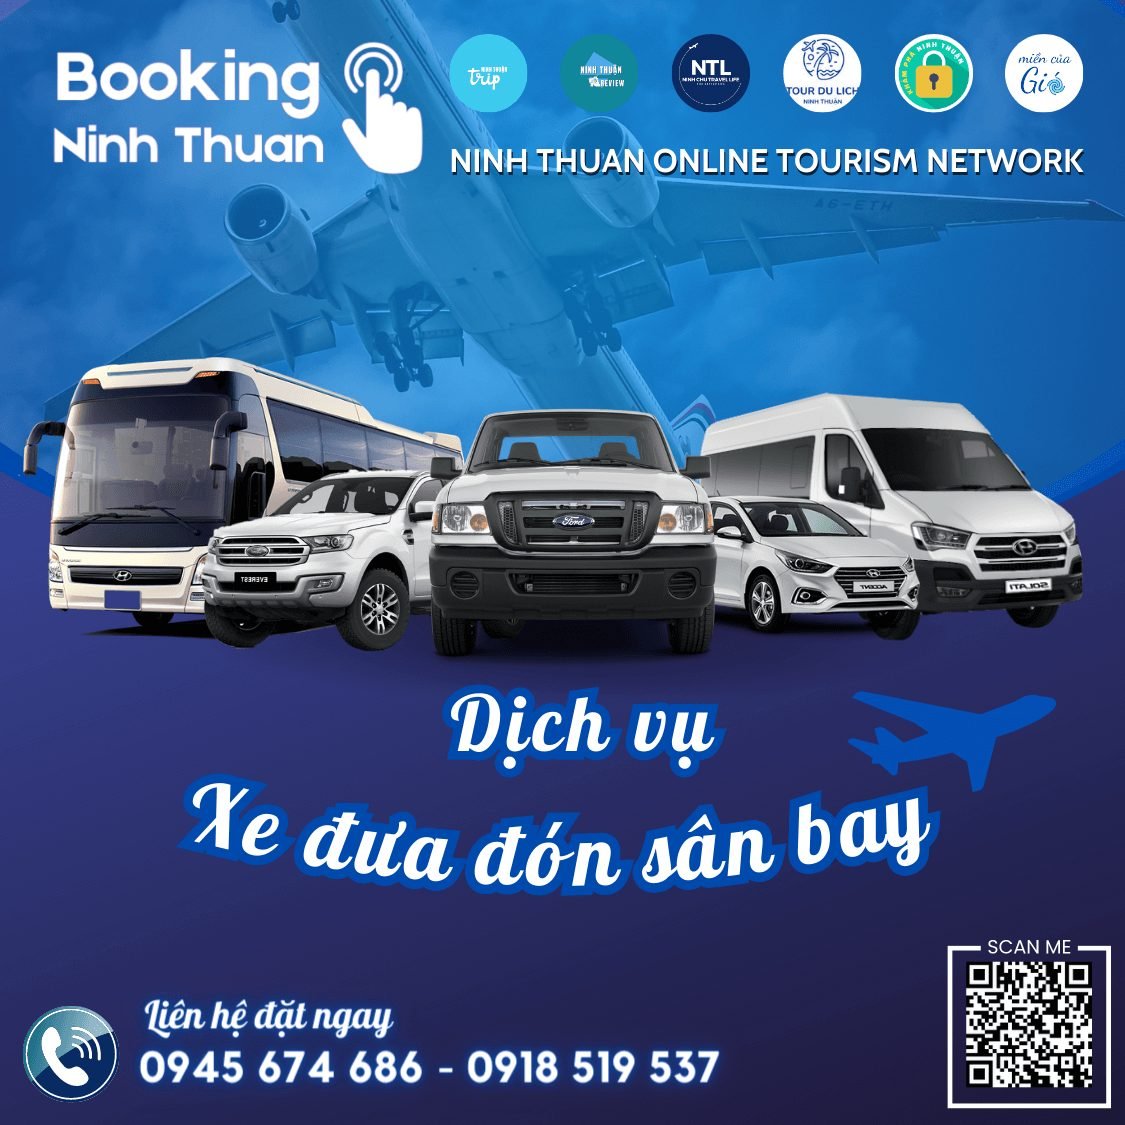 Tourdulichninhthuan.vn cung cấp dịch vụ xe đưa đón sân bay với chất lượng và giá tốt nhất thị trường